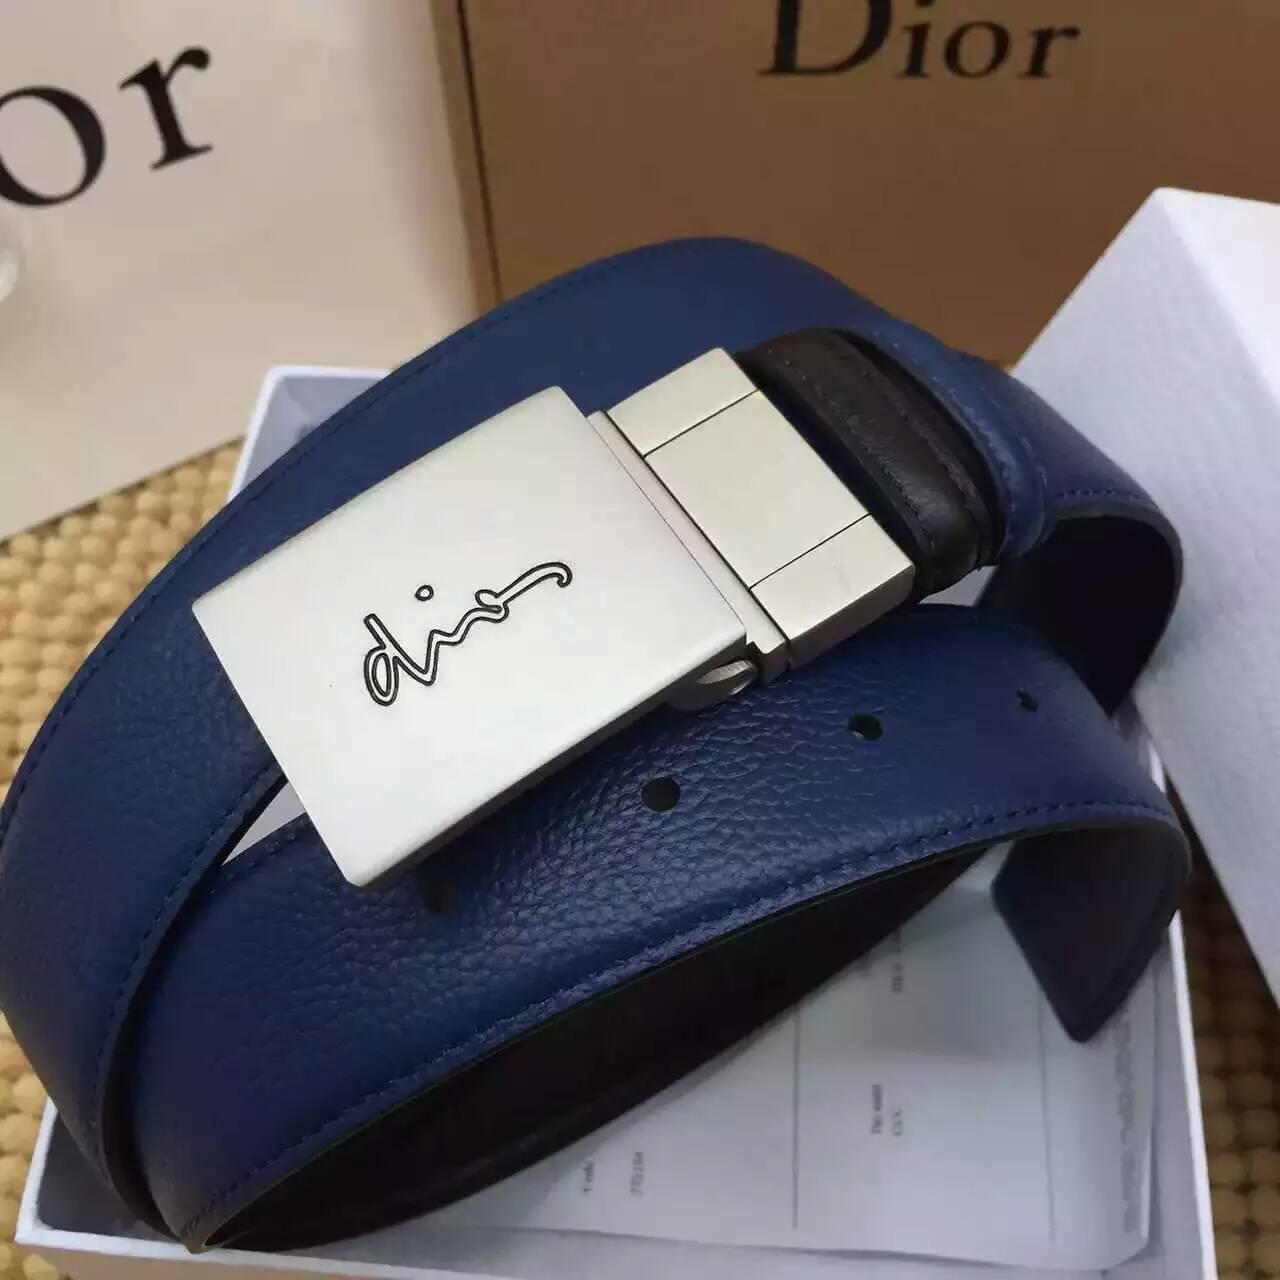 ディオールコピー ベルト Christian Dior 2016春夏新作 高品質 メンズ ベルト diorbelt160320-13